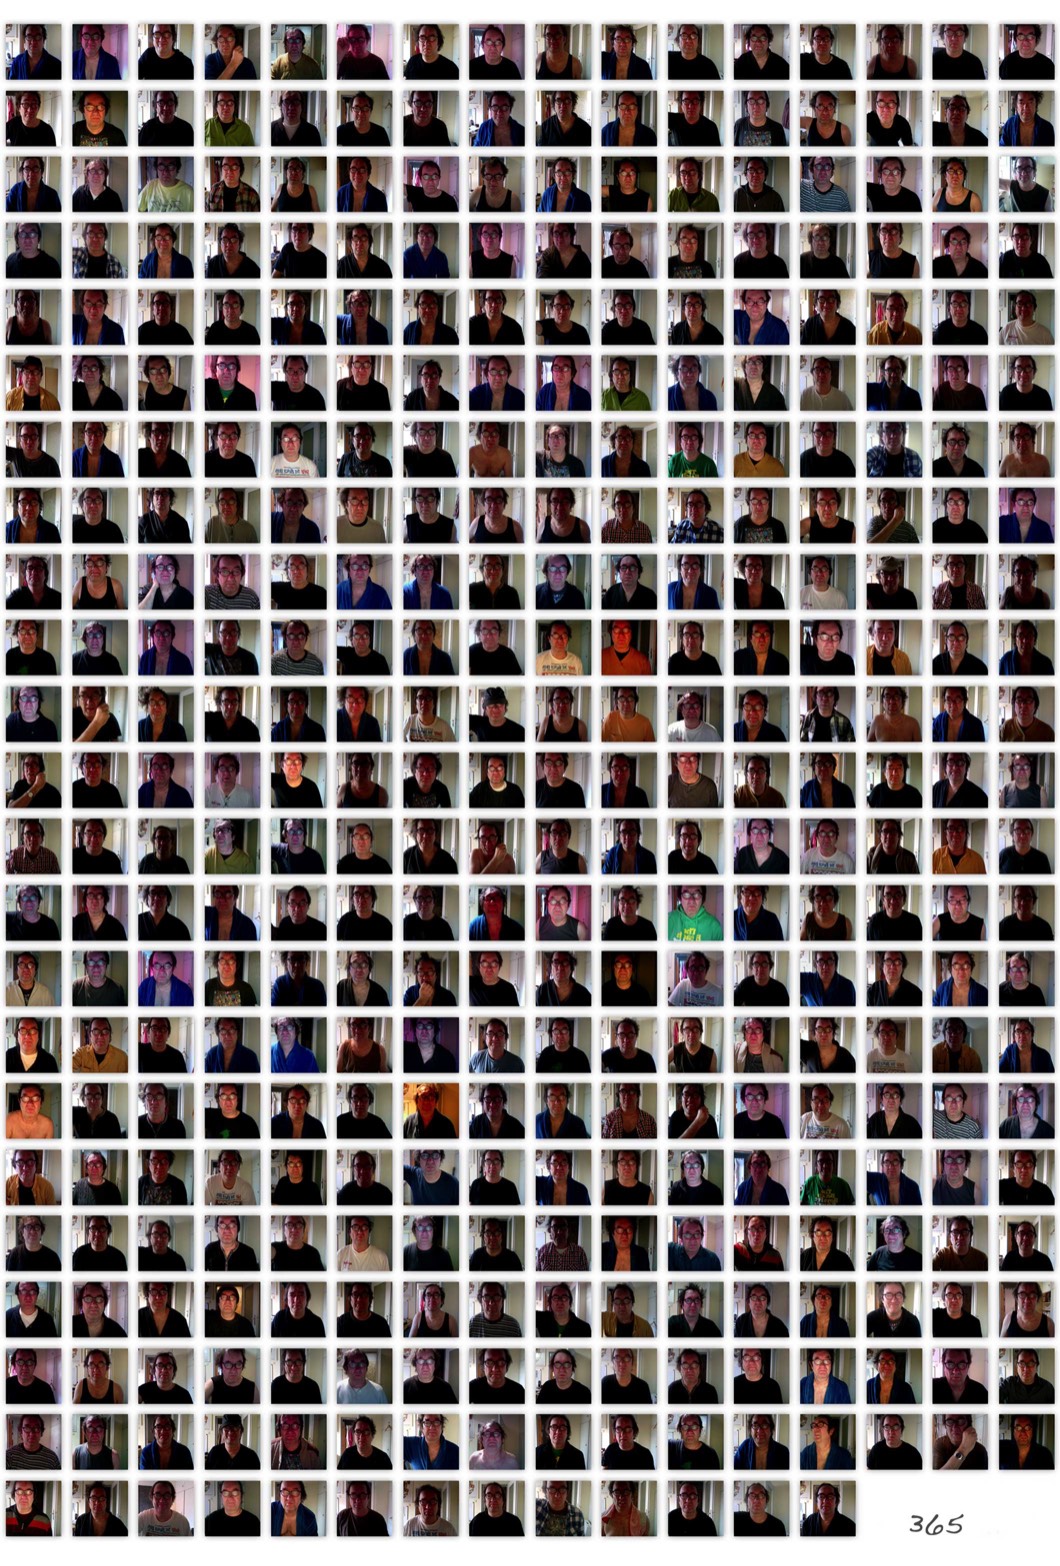 365 abgebildete Selbstportraits